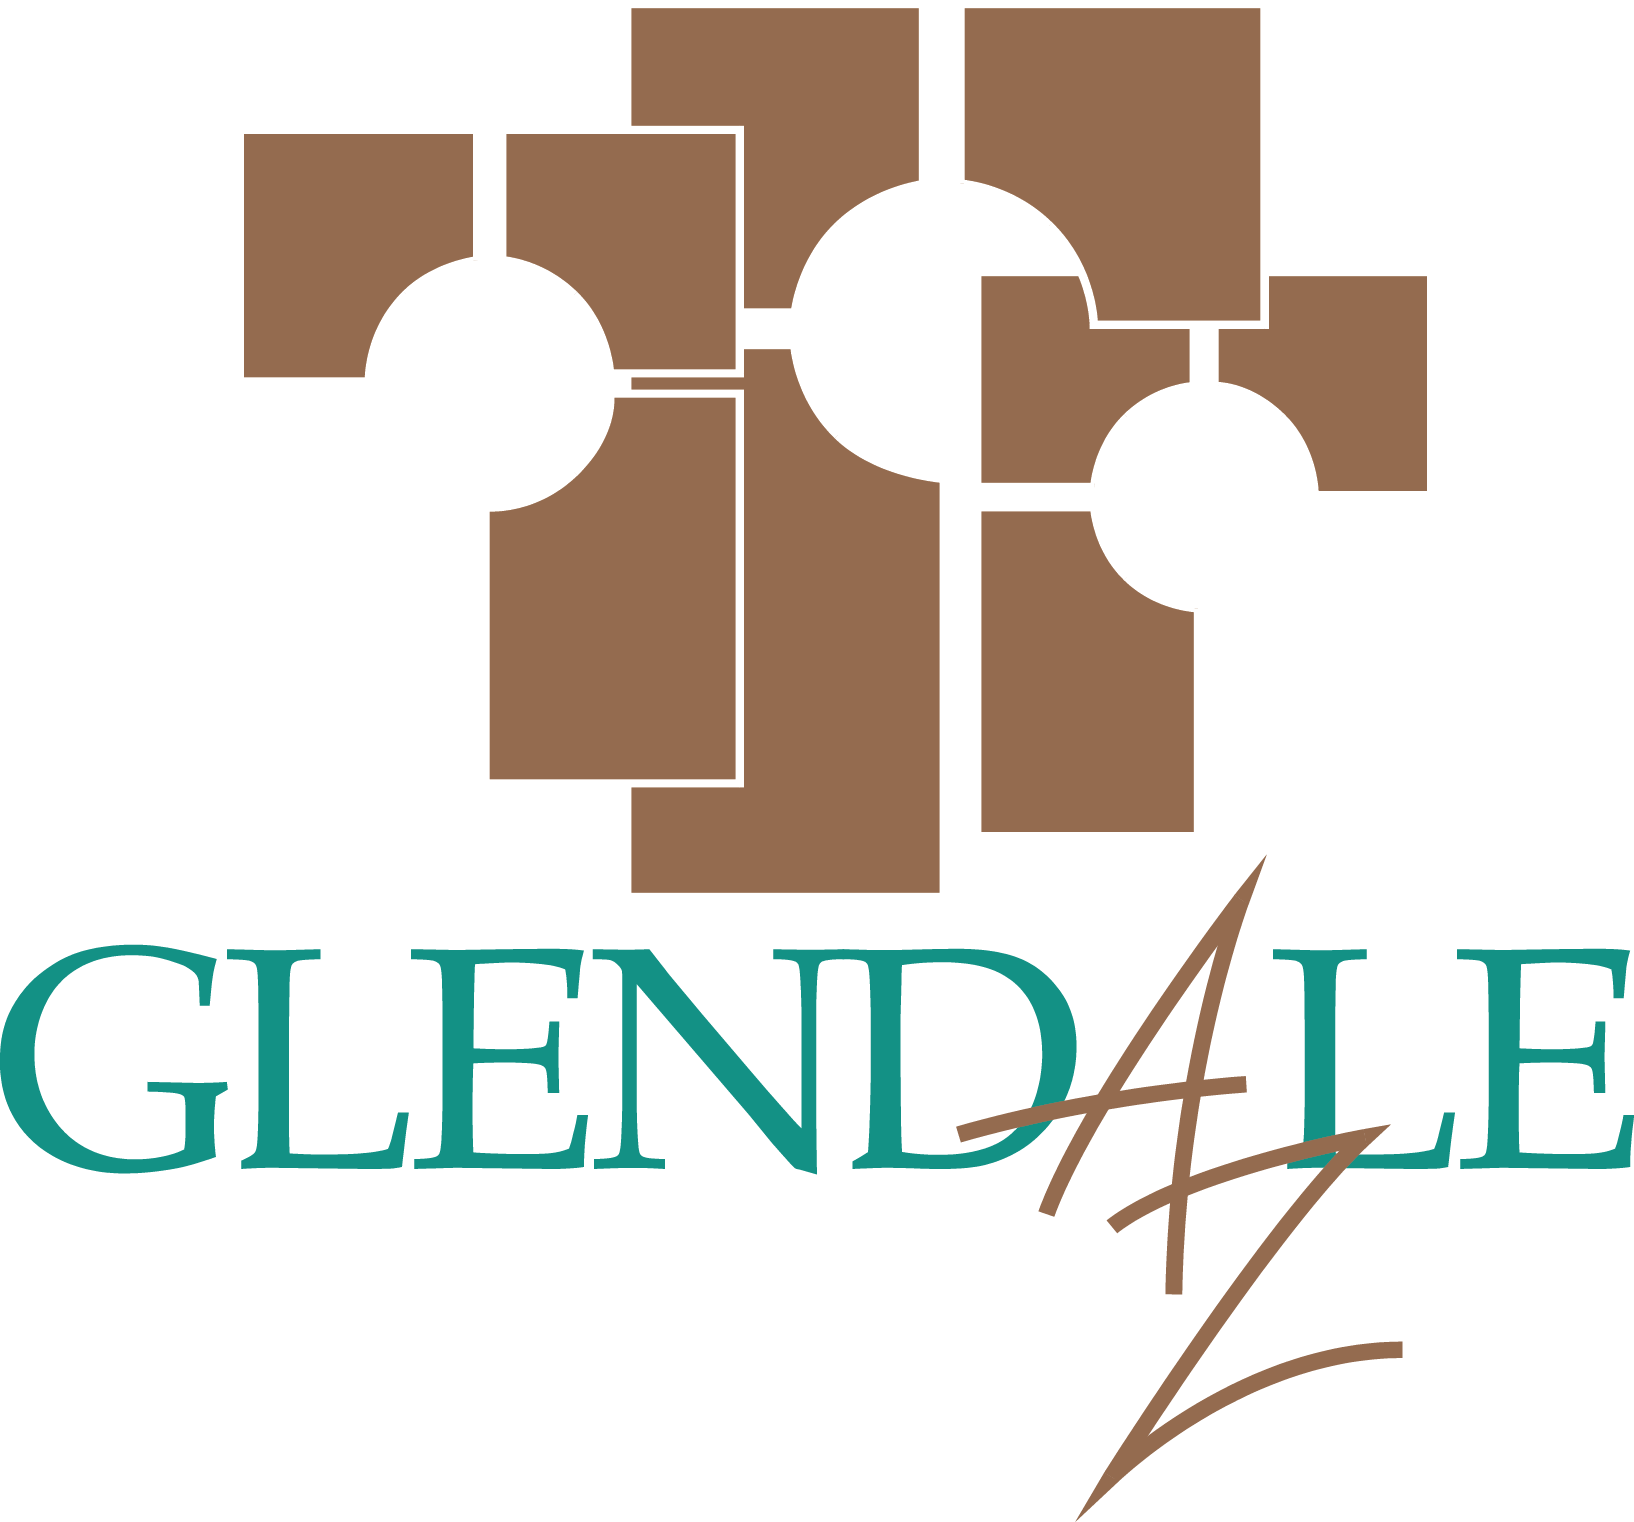 Glendale logo